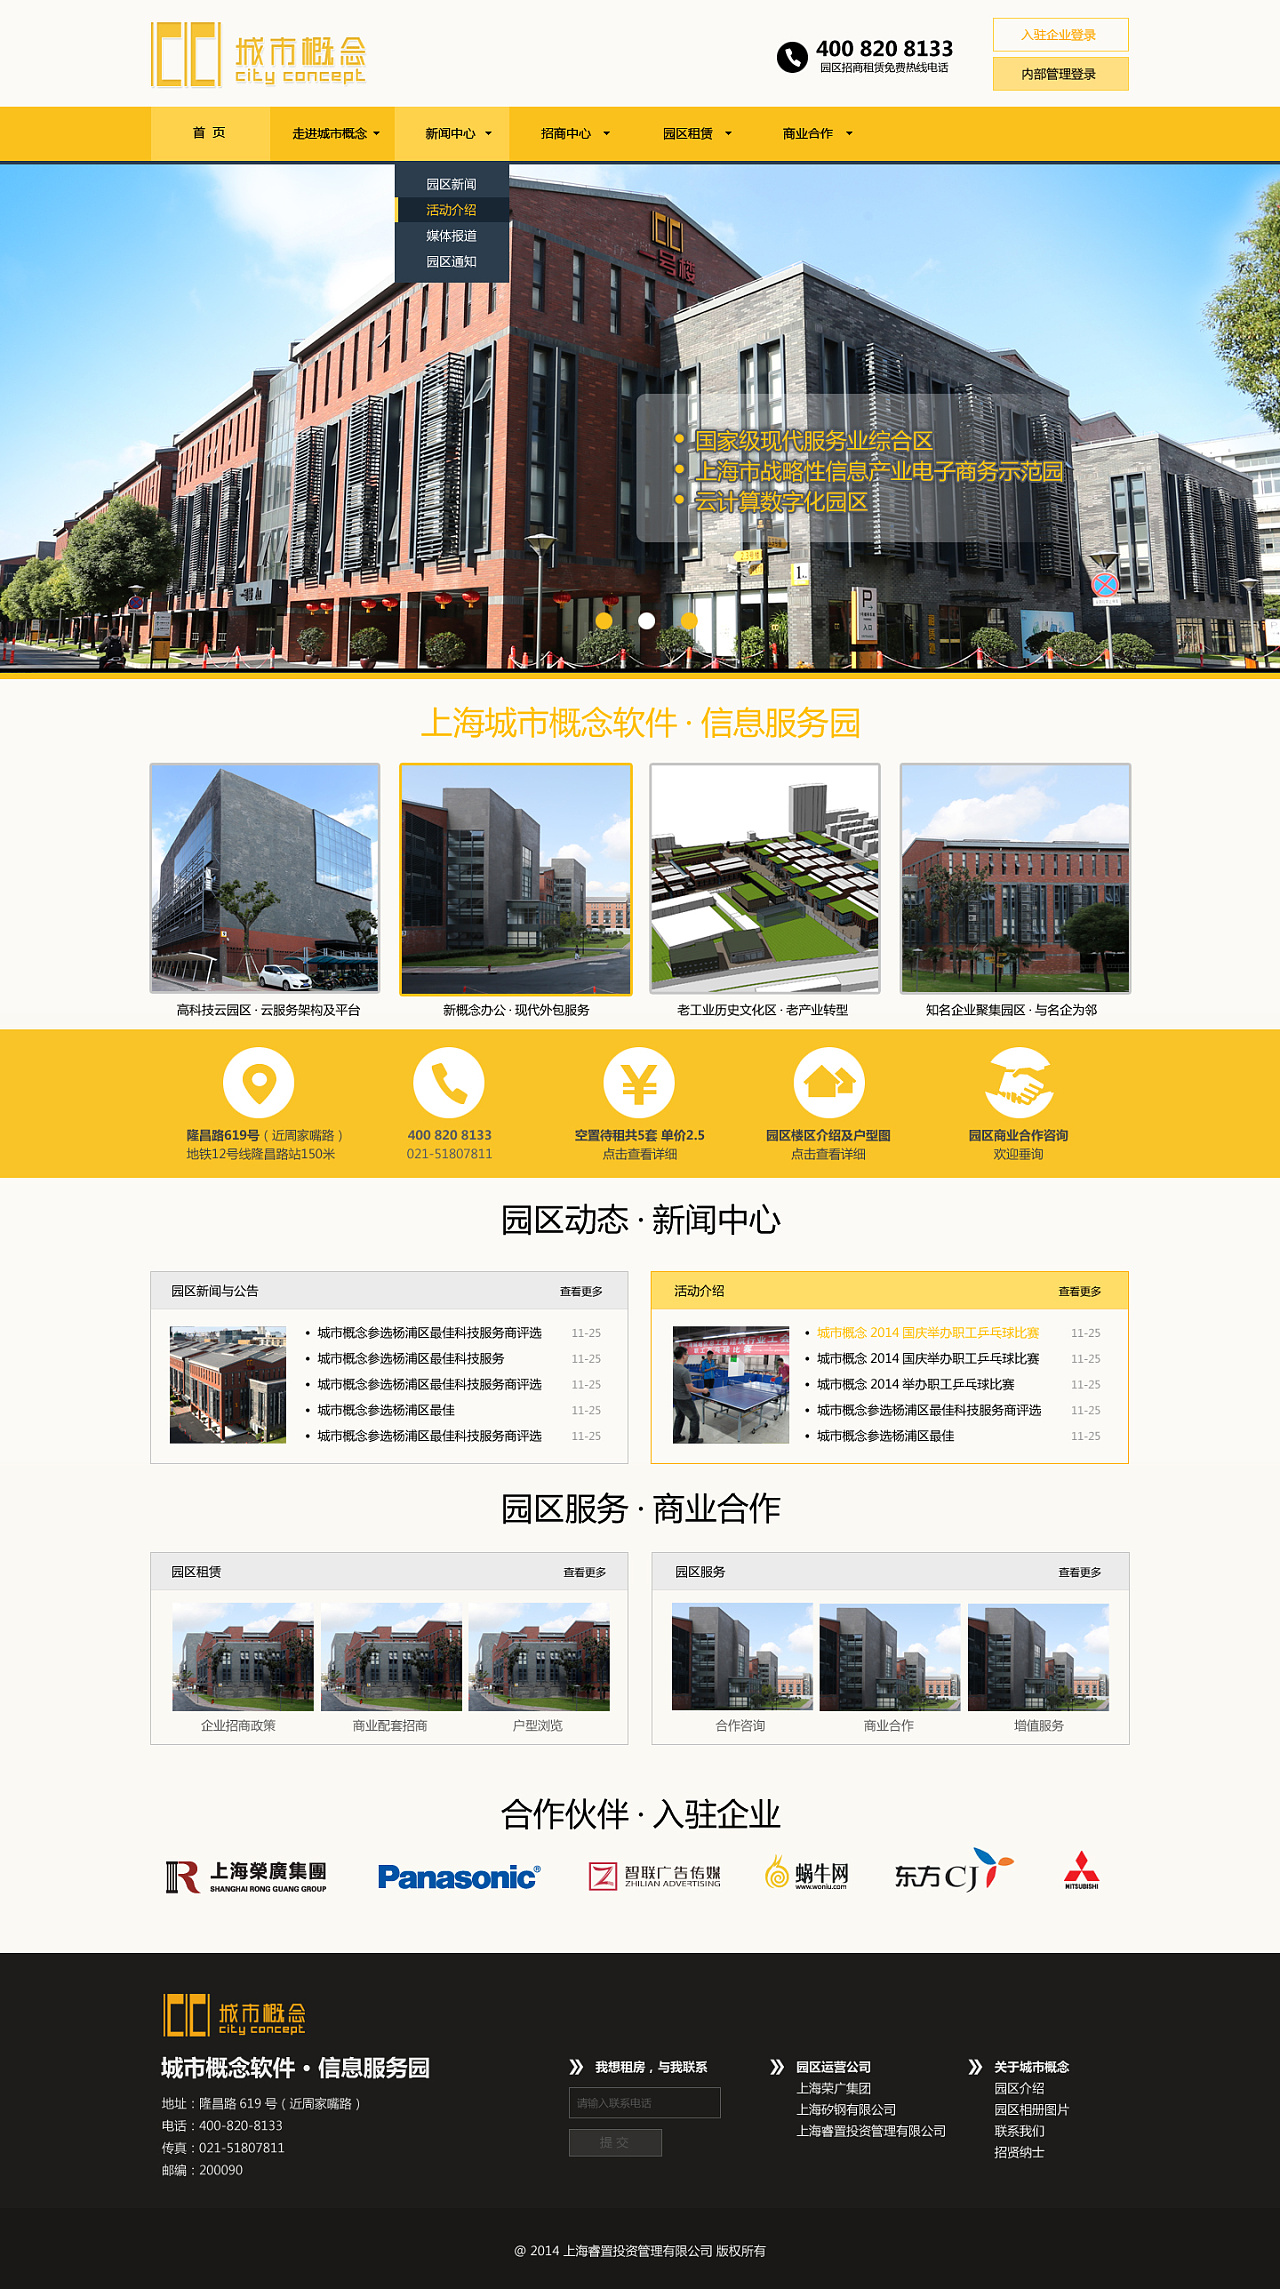 上海城市概念园区官方网站设计稿